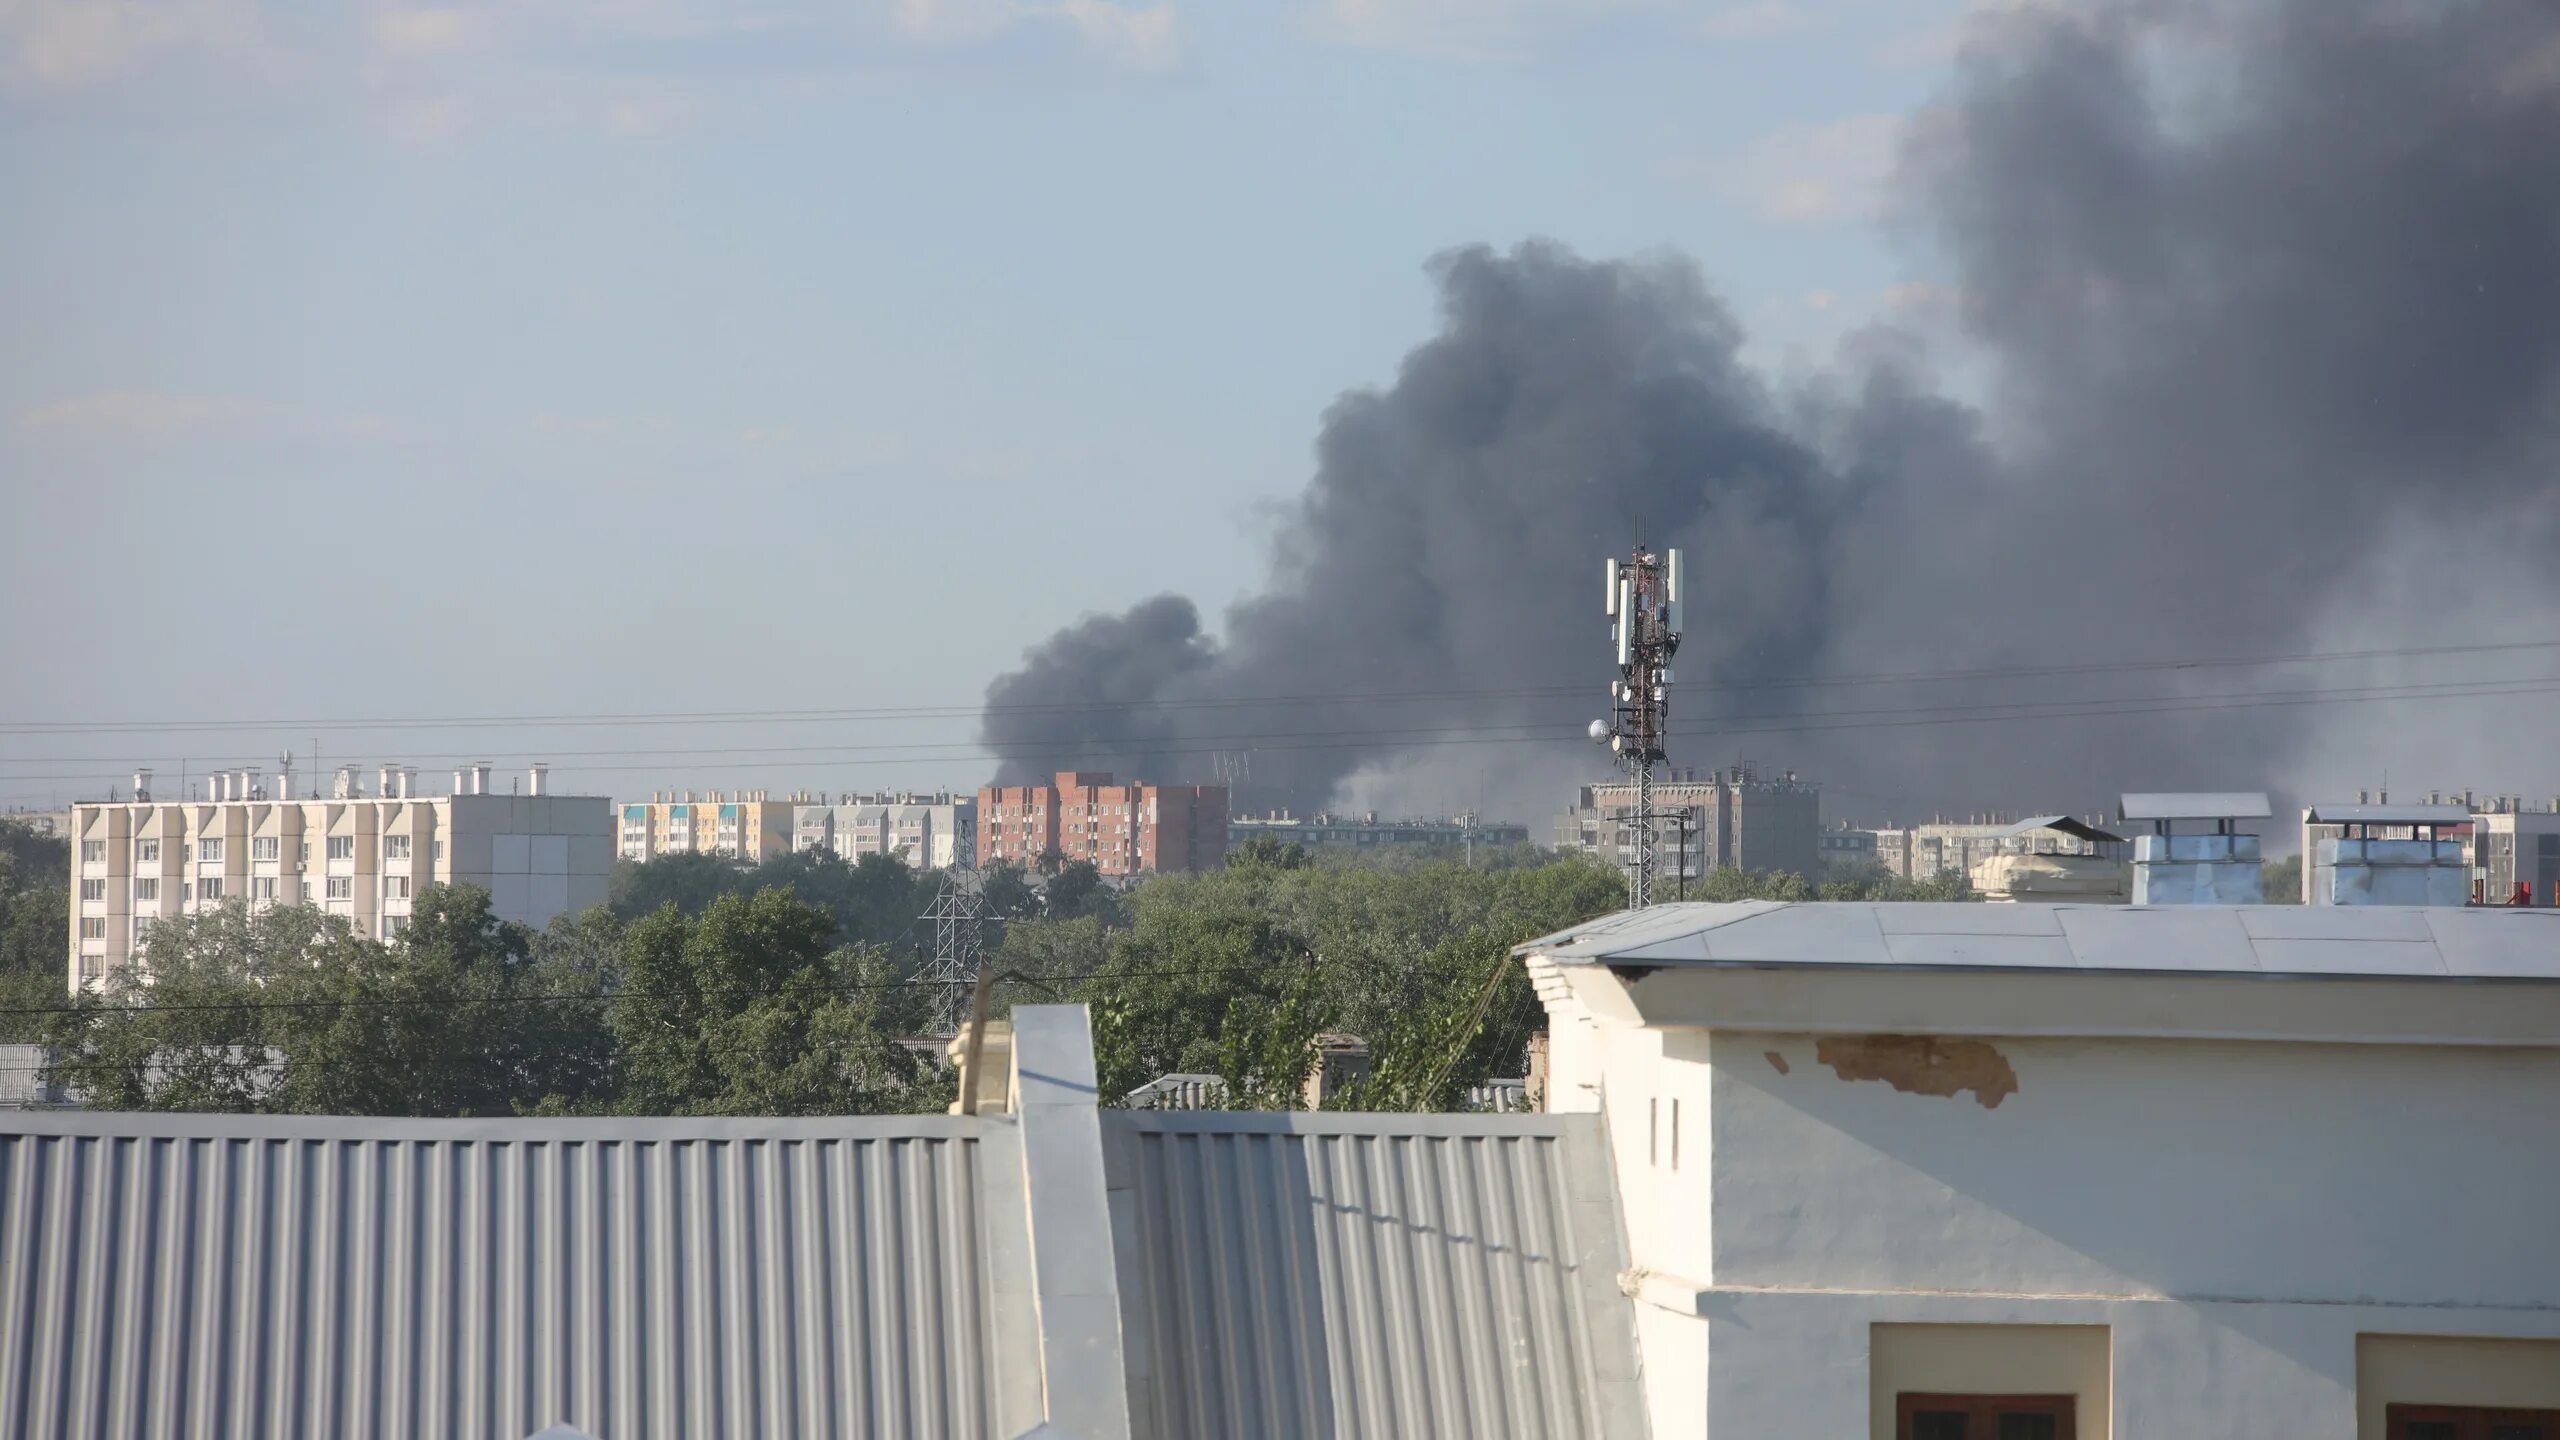 Шагол су сгорел. Пожар в Челябинске 2021 года. Тополиный пух горит. Тополиный пух пожар МЧС. Пожар на Тополиной 58.